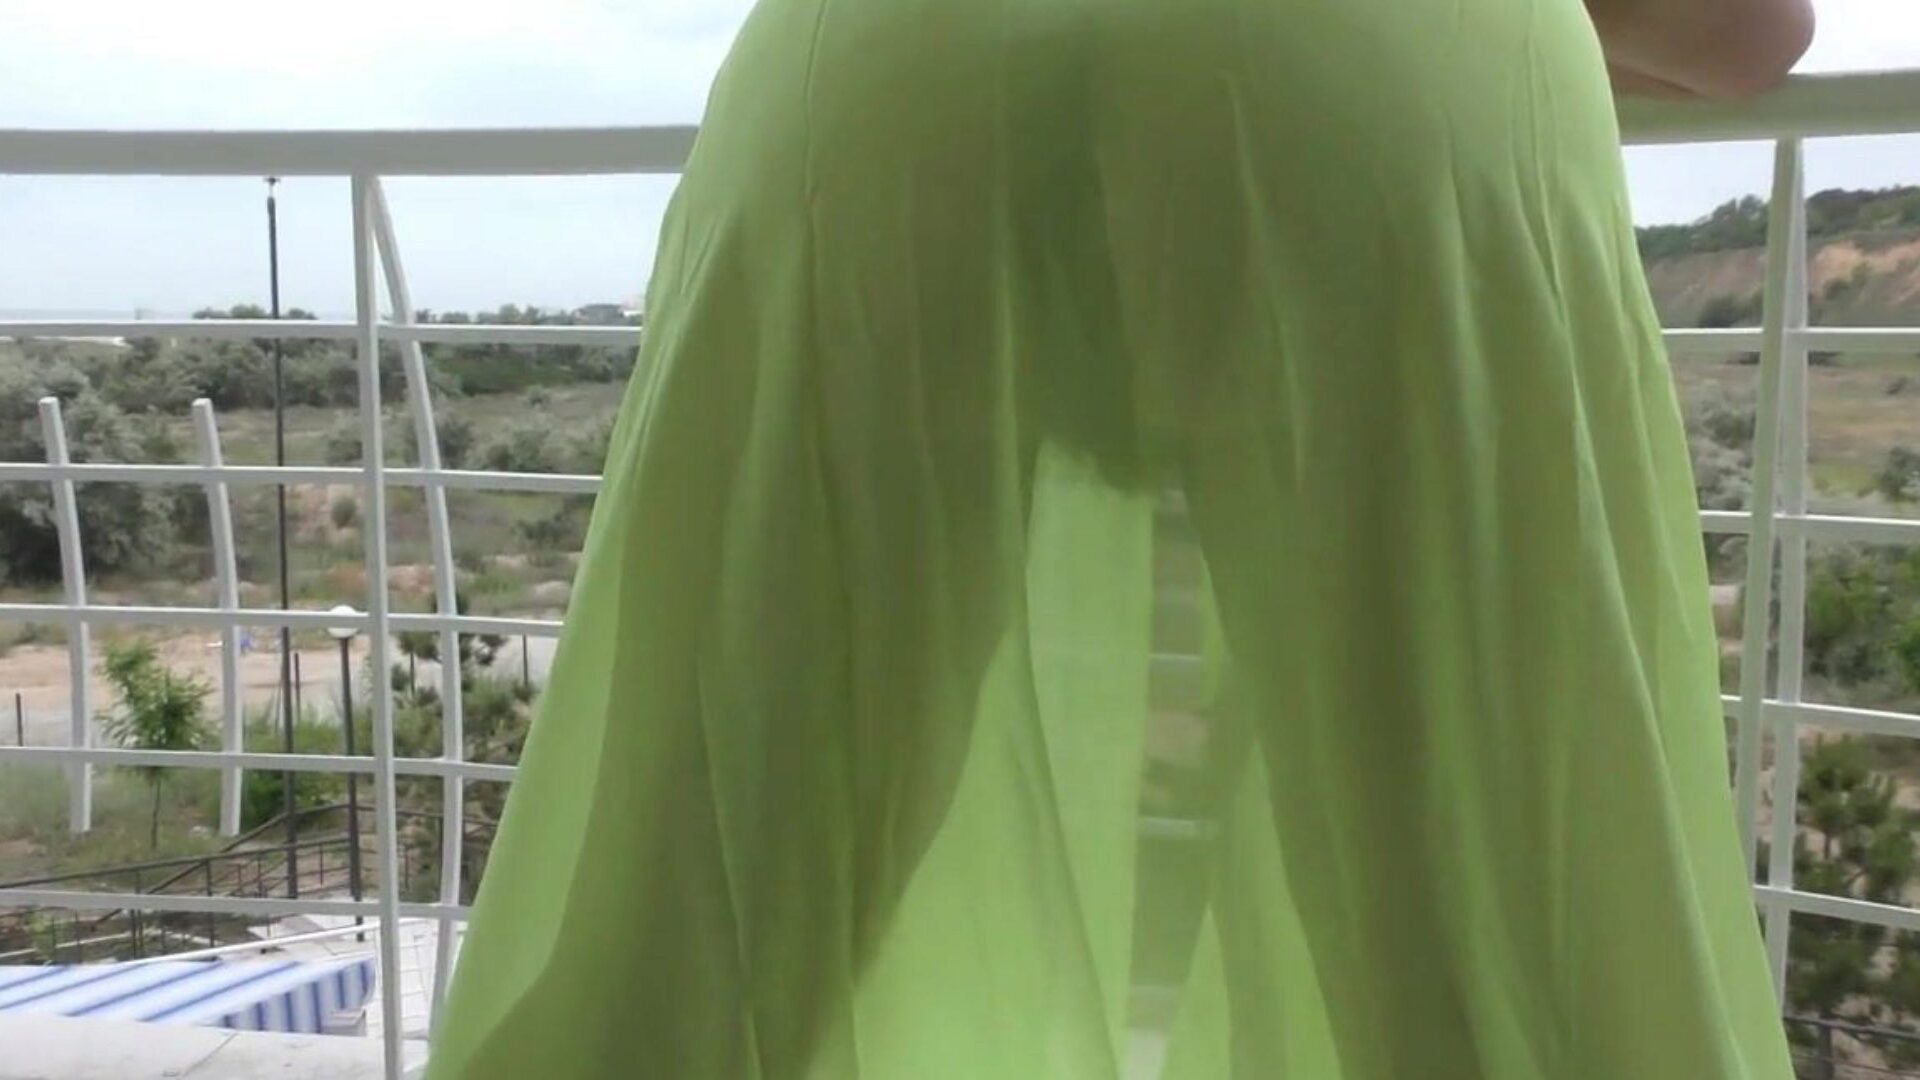 chlupatý ve věku zobrazování na balkoně chlupatý starší v poloprůhledném obleku na balkoně